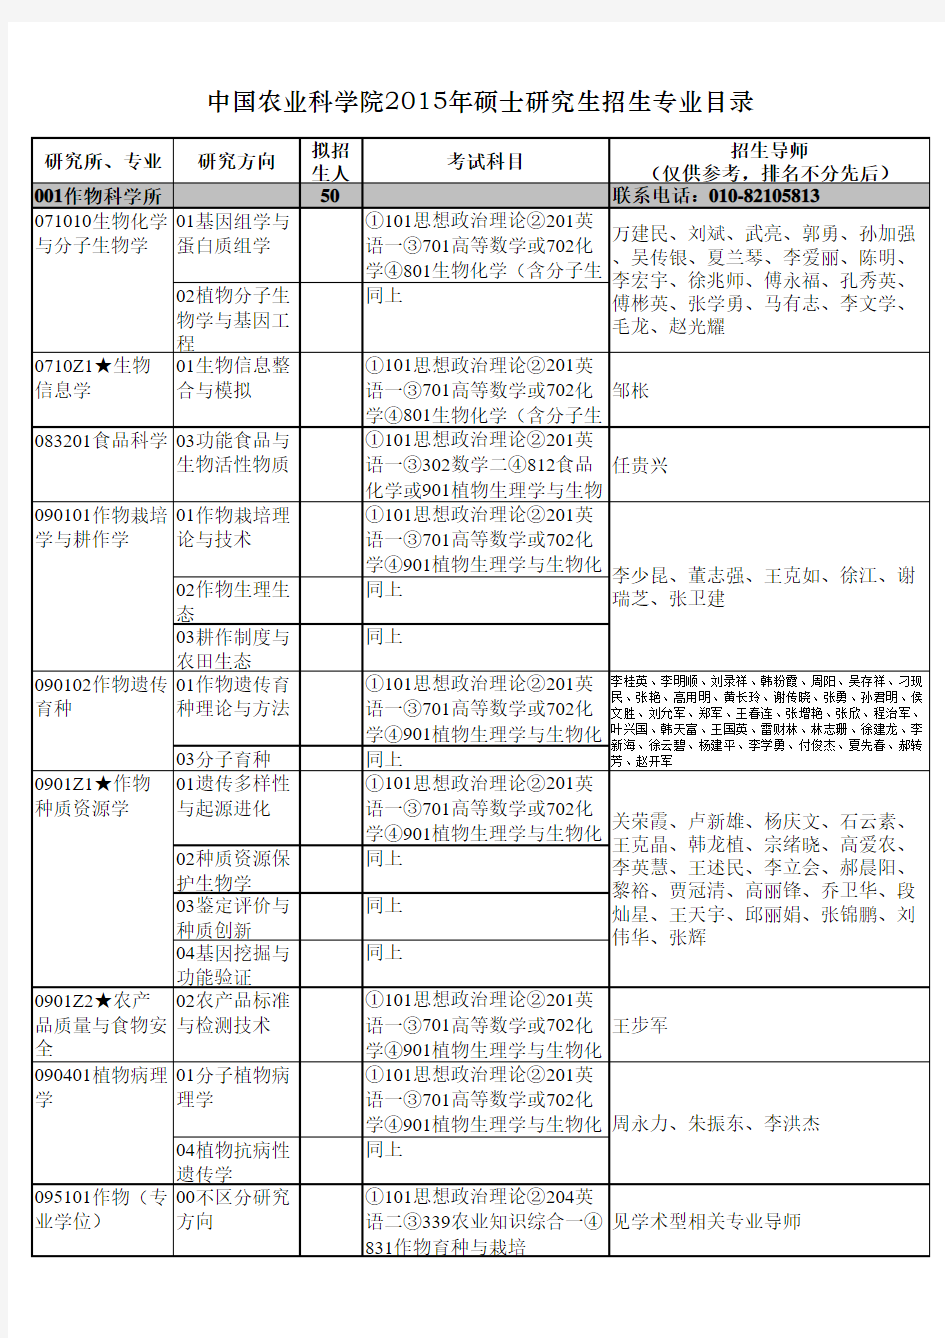 中国农业科学院2015年硕士研究生招生专业目录.-.201492411164 (1)